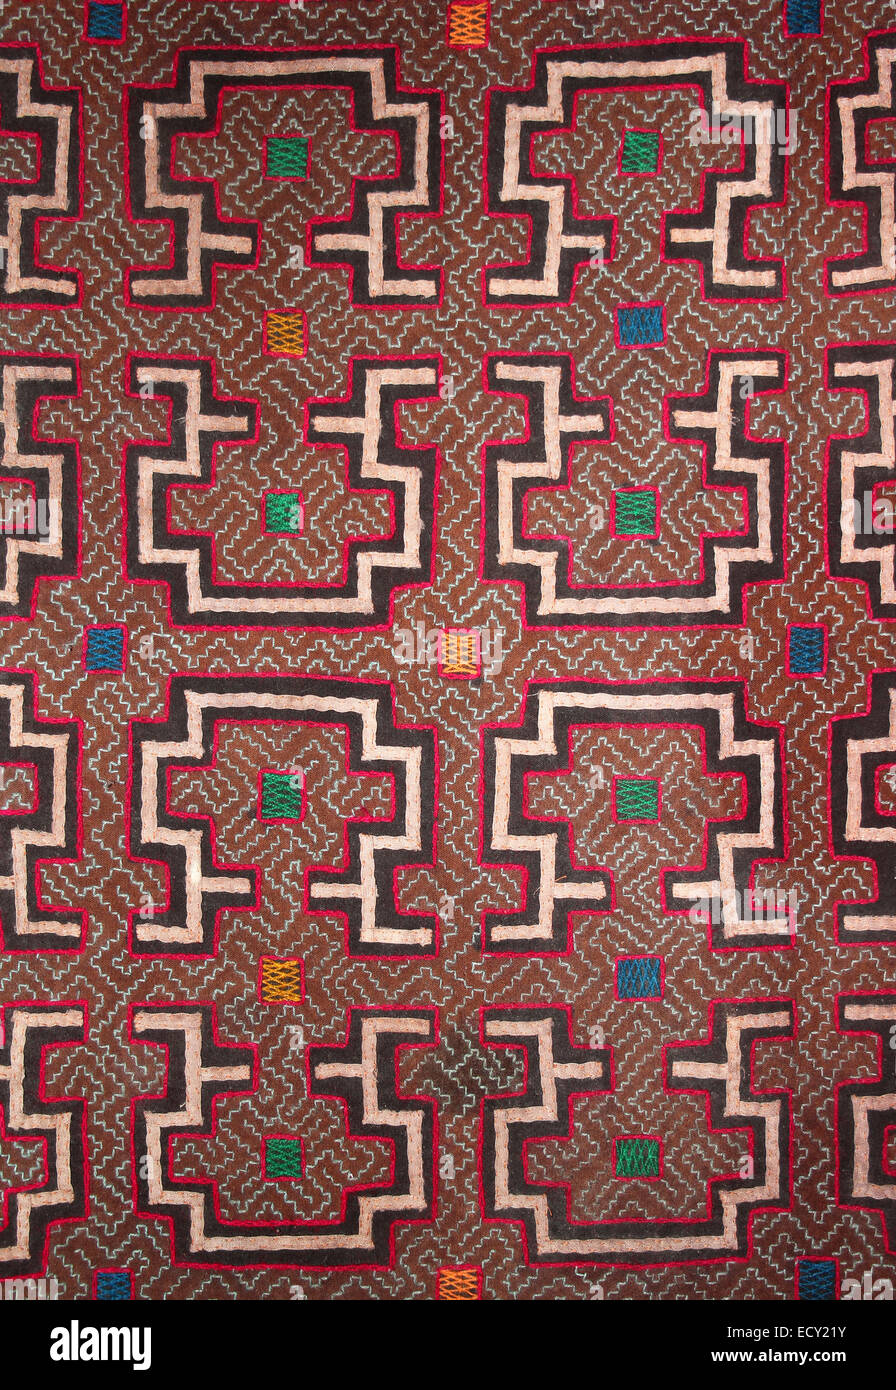 Lineal intrincados patrones geométricos de los Shipibo Indios, una gran tribu de la Amazonia Peruana Foto de stock